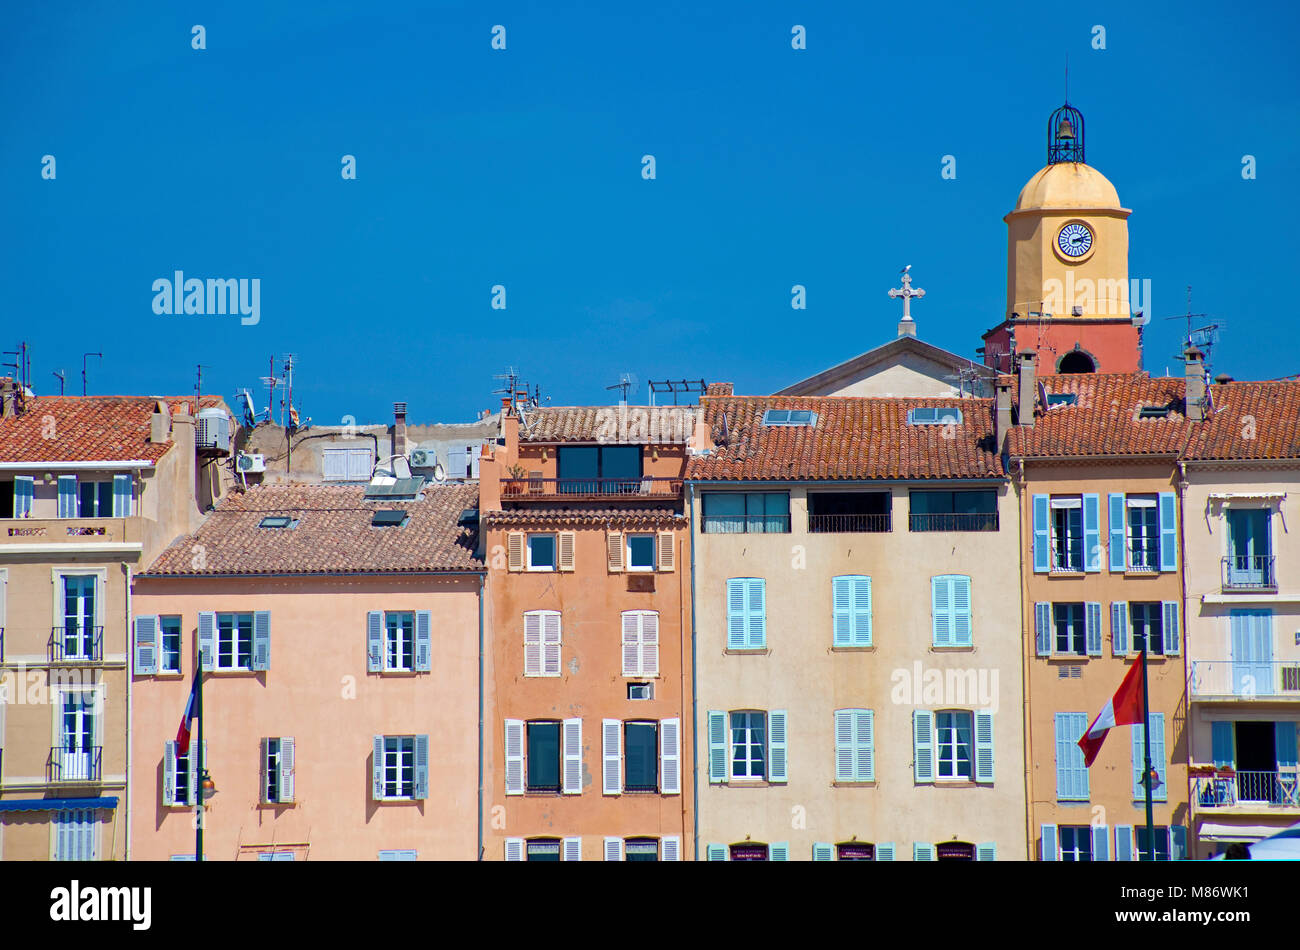 Row of houses and bell tower of Notre-Dame-de-l’Assomption de Saint-Tropez, harbour of Saint-Tropez, french riviera, South France, Cote d'Azur, France Stock Photo